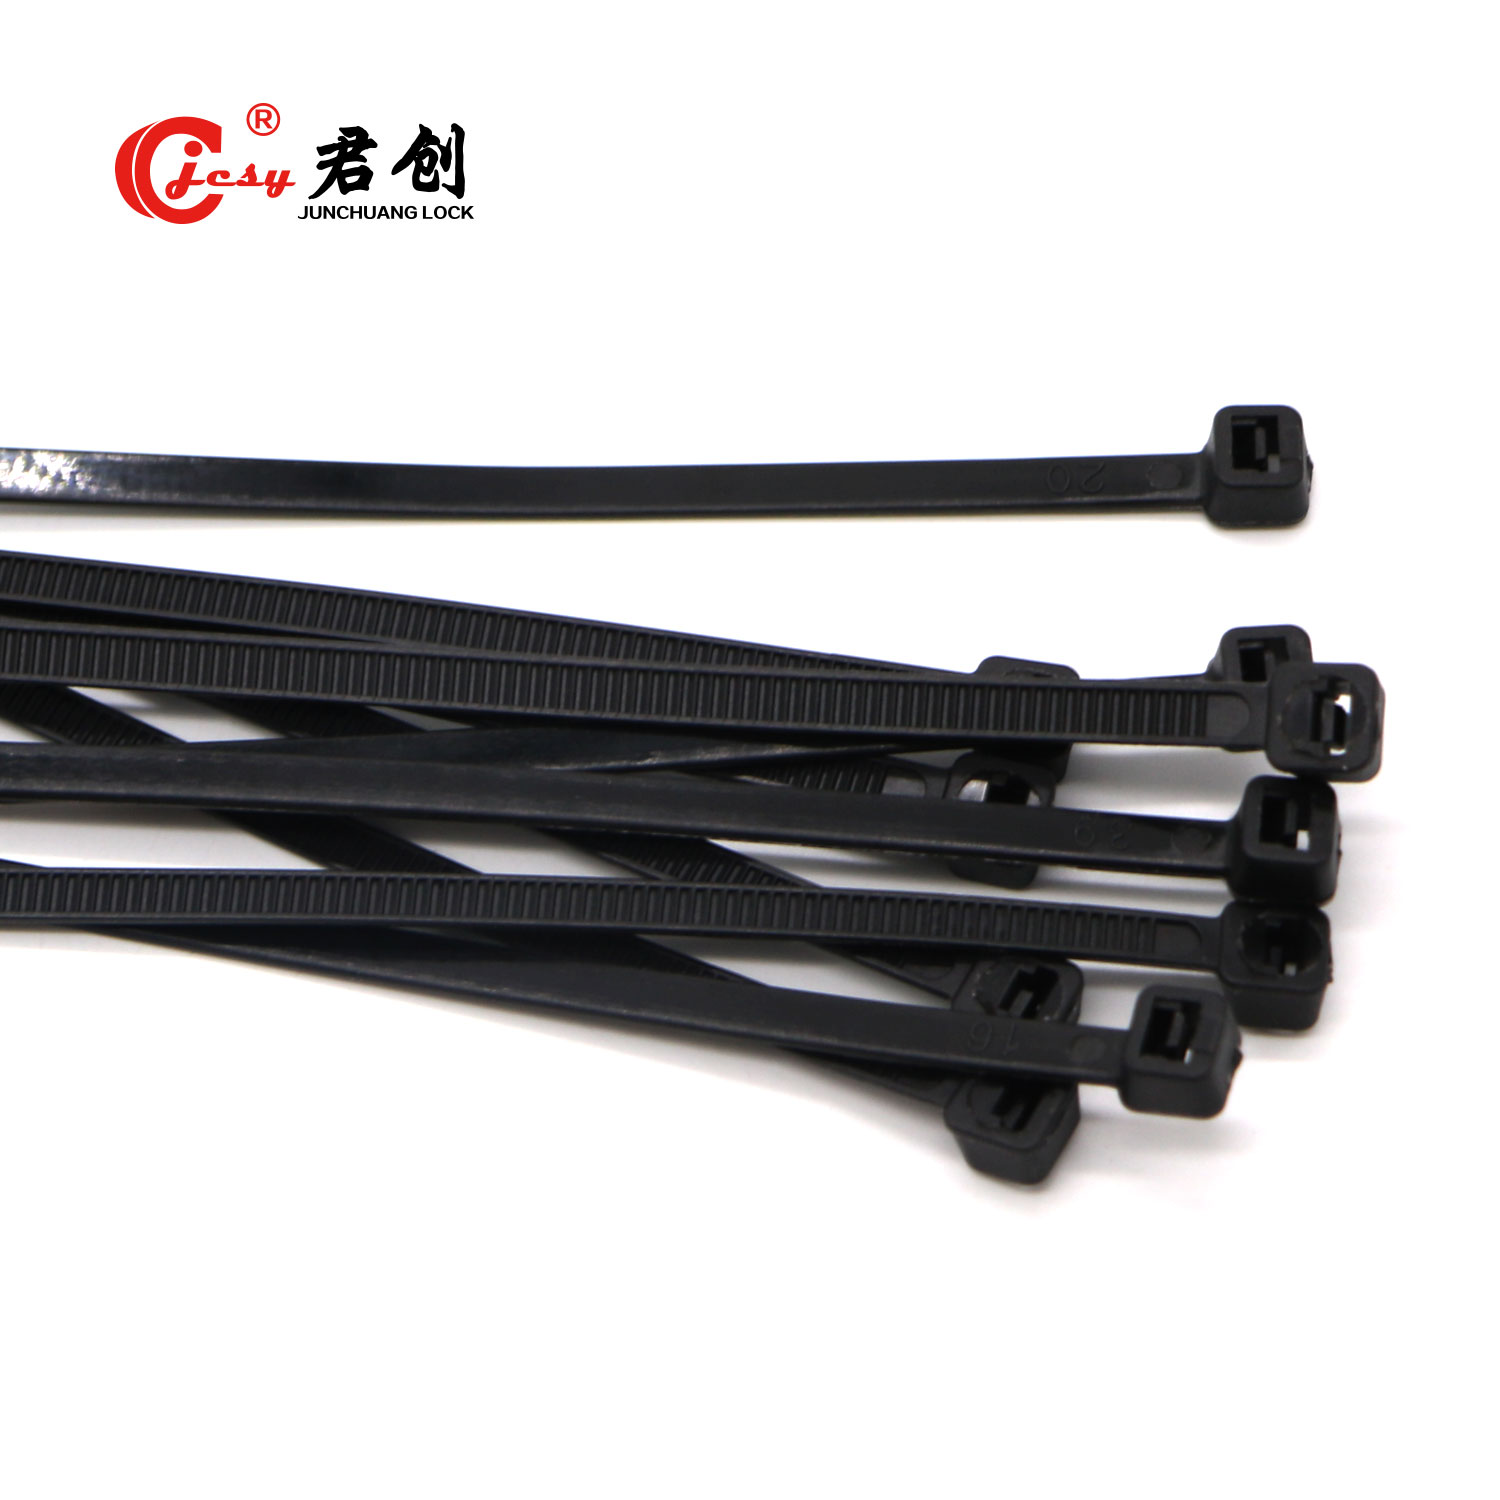 Нейлоновые кабельные стяжки разной длины от китайского производителя